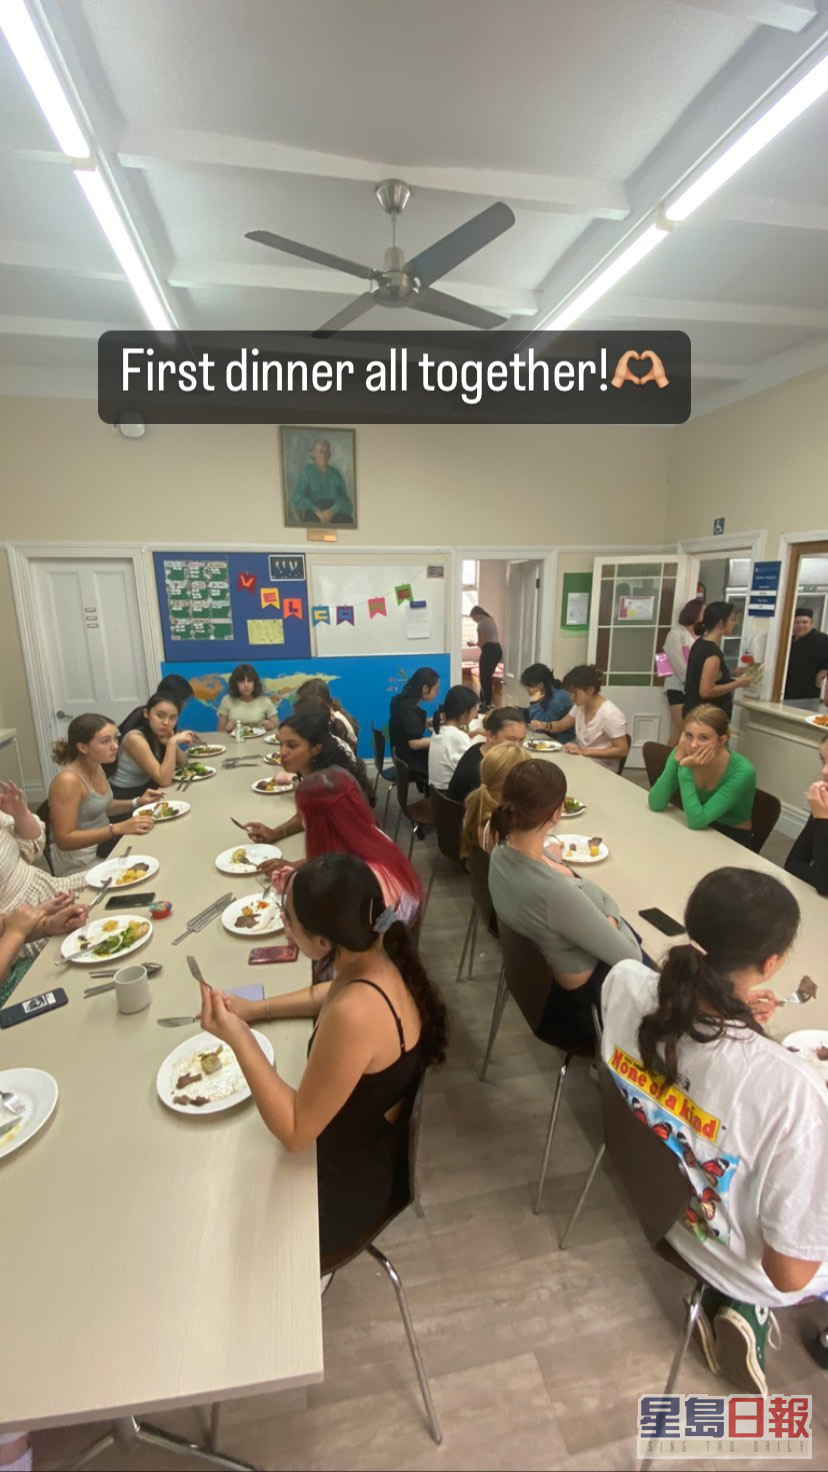 昨晚与同学首次一同享受晚餐。